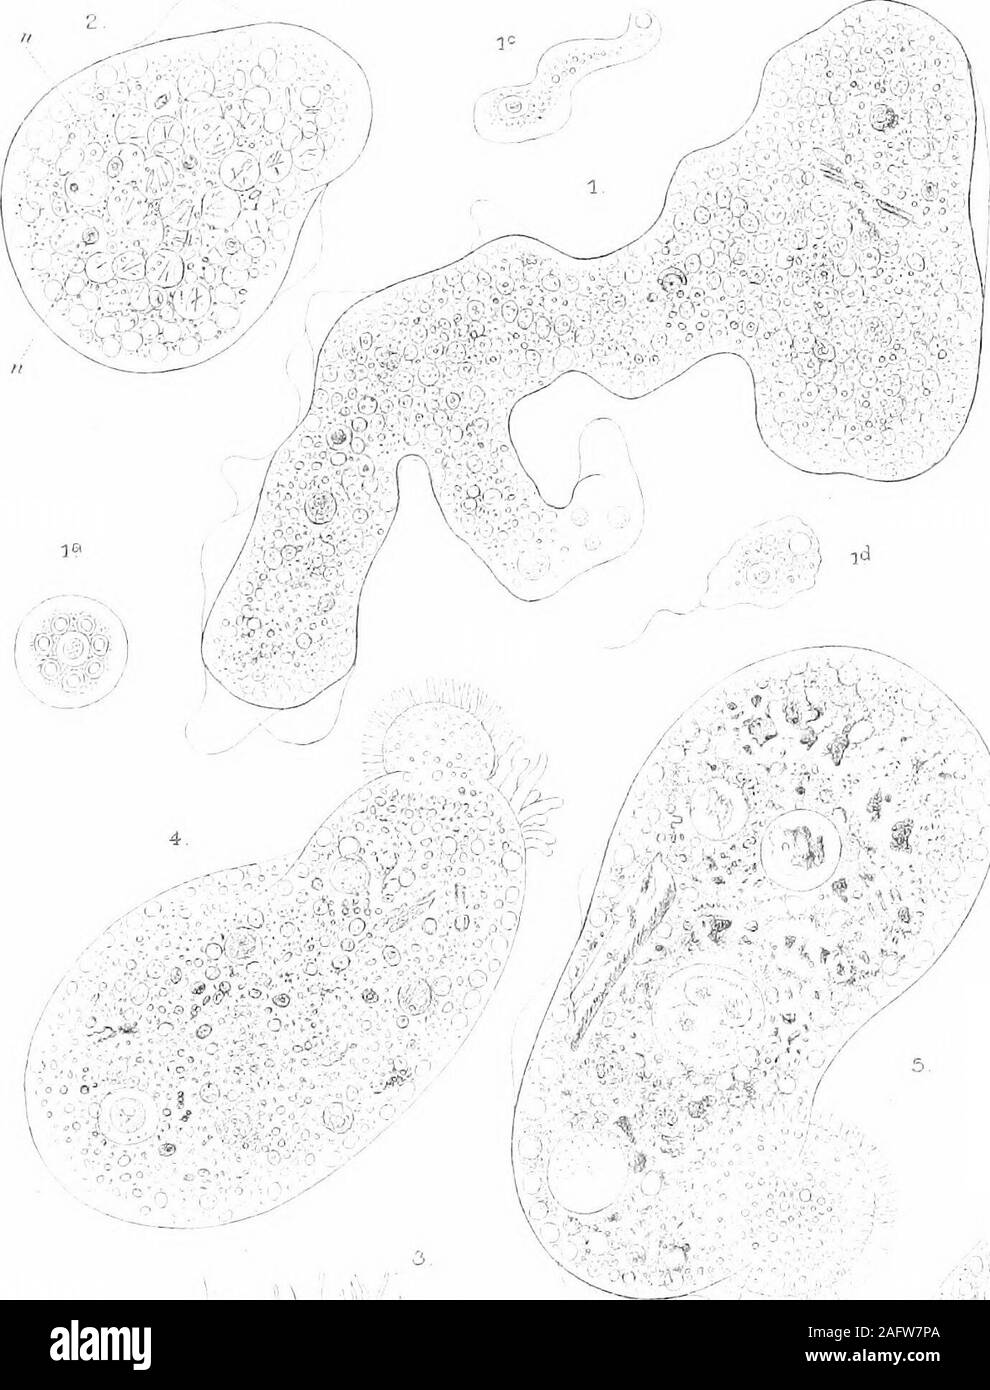 . Die britische Süßwasser und Rhizopoda Heliozoa. Platte 7 Platte VII. Fios. 1-3. Pelomyxa pahtstris G-reeff. (S. 74) Abb. 1.- Ordinarycondition bei aktiver Bewegung. Teich an JSTorthenEtchells, Cheshire, x über 100. Abbn. 1 a-d.-Phasen in der Entwicklung von amoebulaSj als observedby G-reeff. Abb. 2. - eine junge Person in restingstate, die innere Struktur, nach der G-reeff. xabout 60-70. Abb. 3. - Eine ungewöhnliche Phase der restingstate, das Plasma - Body Forming a Sub-sphärischen Masse? mit einer Franse feinen hyalinen pseudopodia. x über 150. 4-6. S. villosa Leidy. (S. 79) Abb. 4.- Normale conditionduring Acti Stockfoto